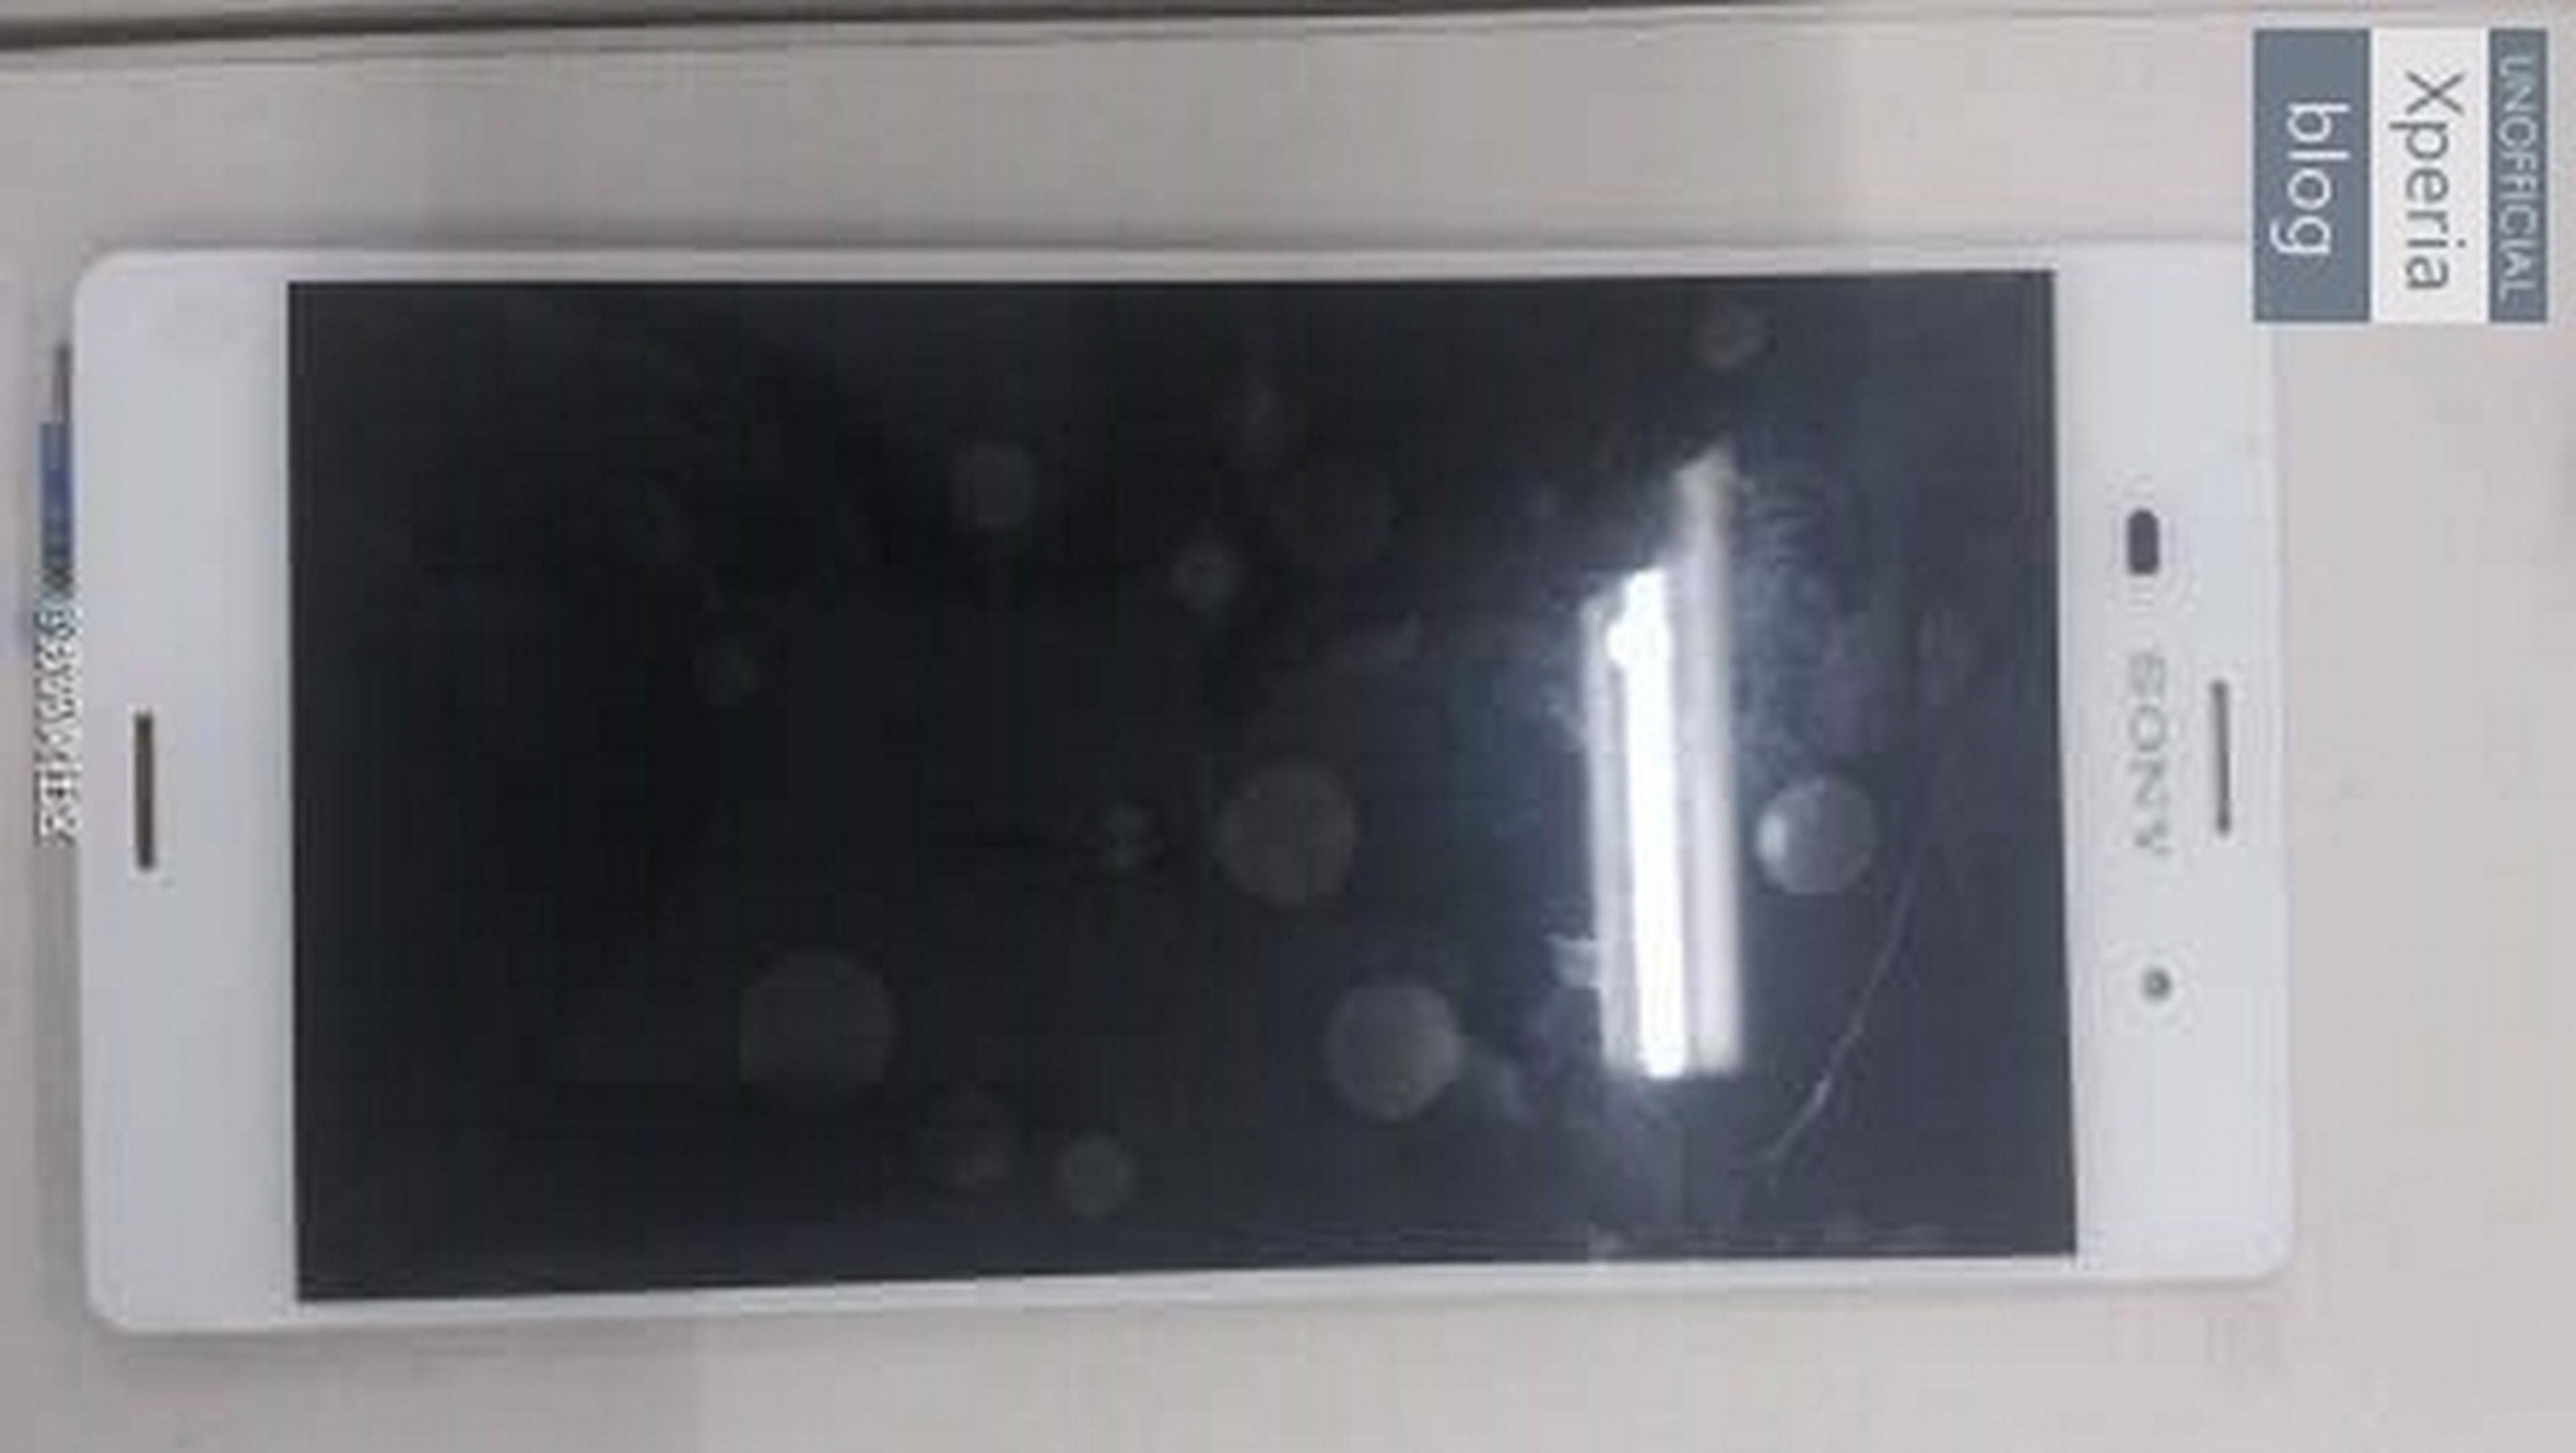 Se desvela el nuevo smartphone Sony Xperia Z3, con fotos y especificaciones.